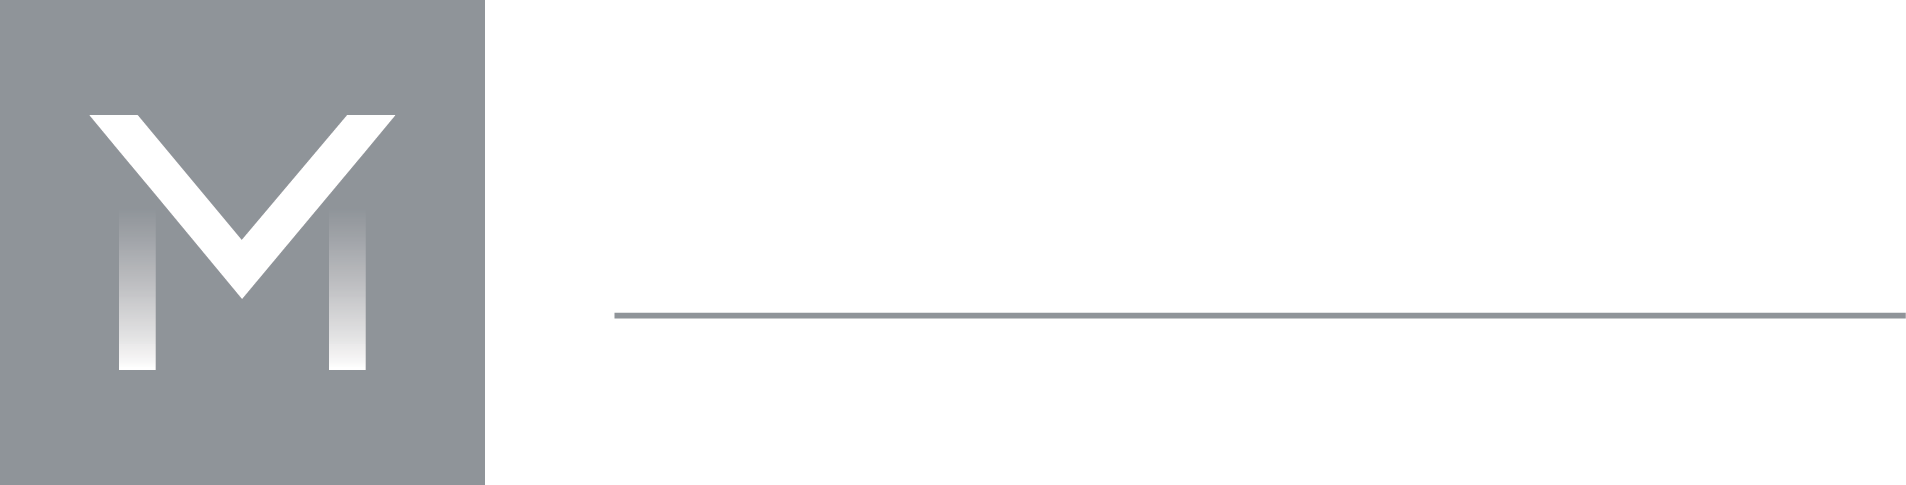 Mandate Corporate